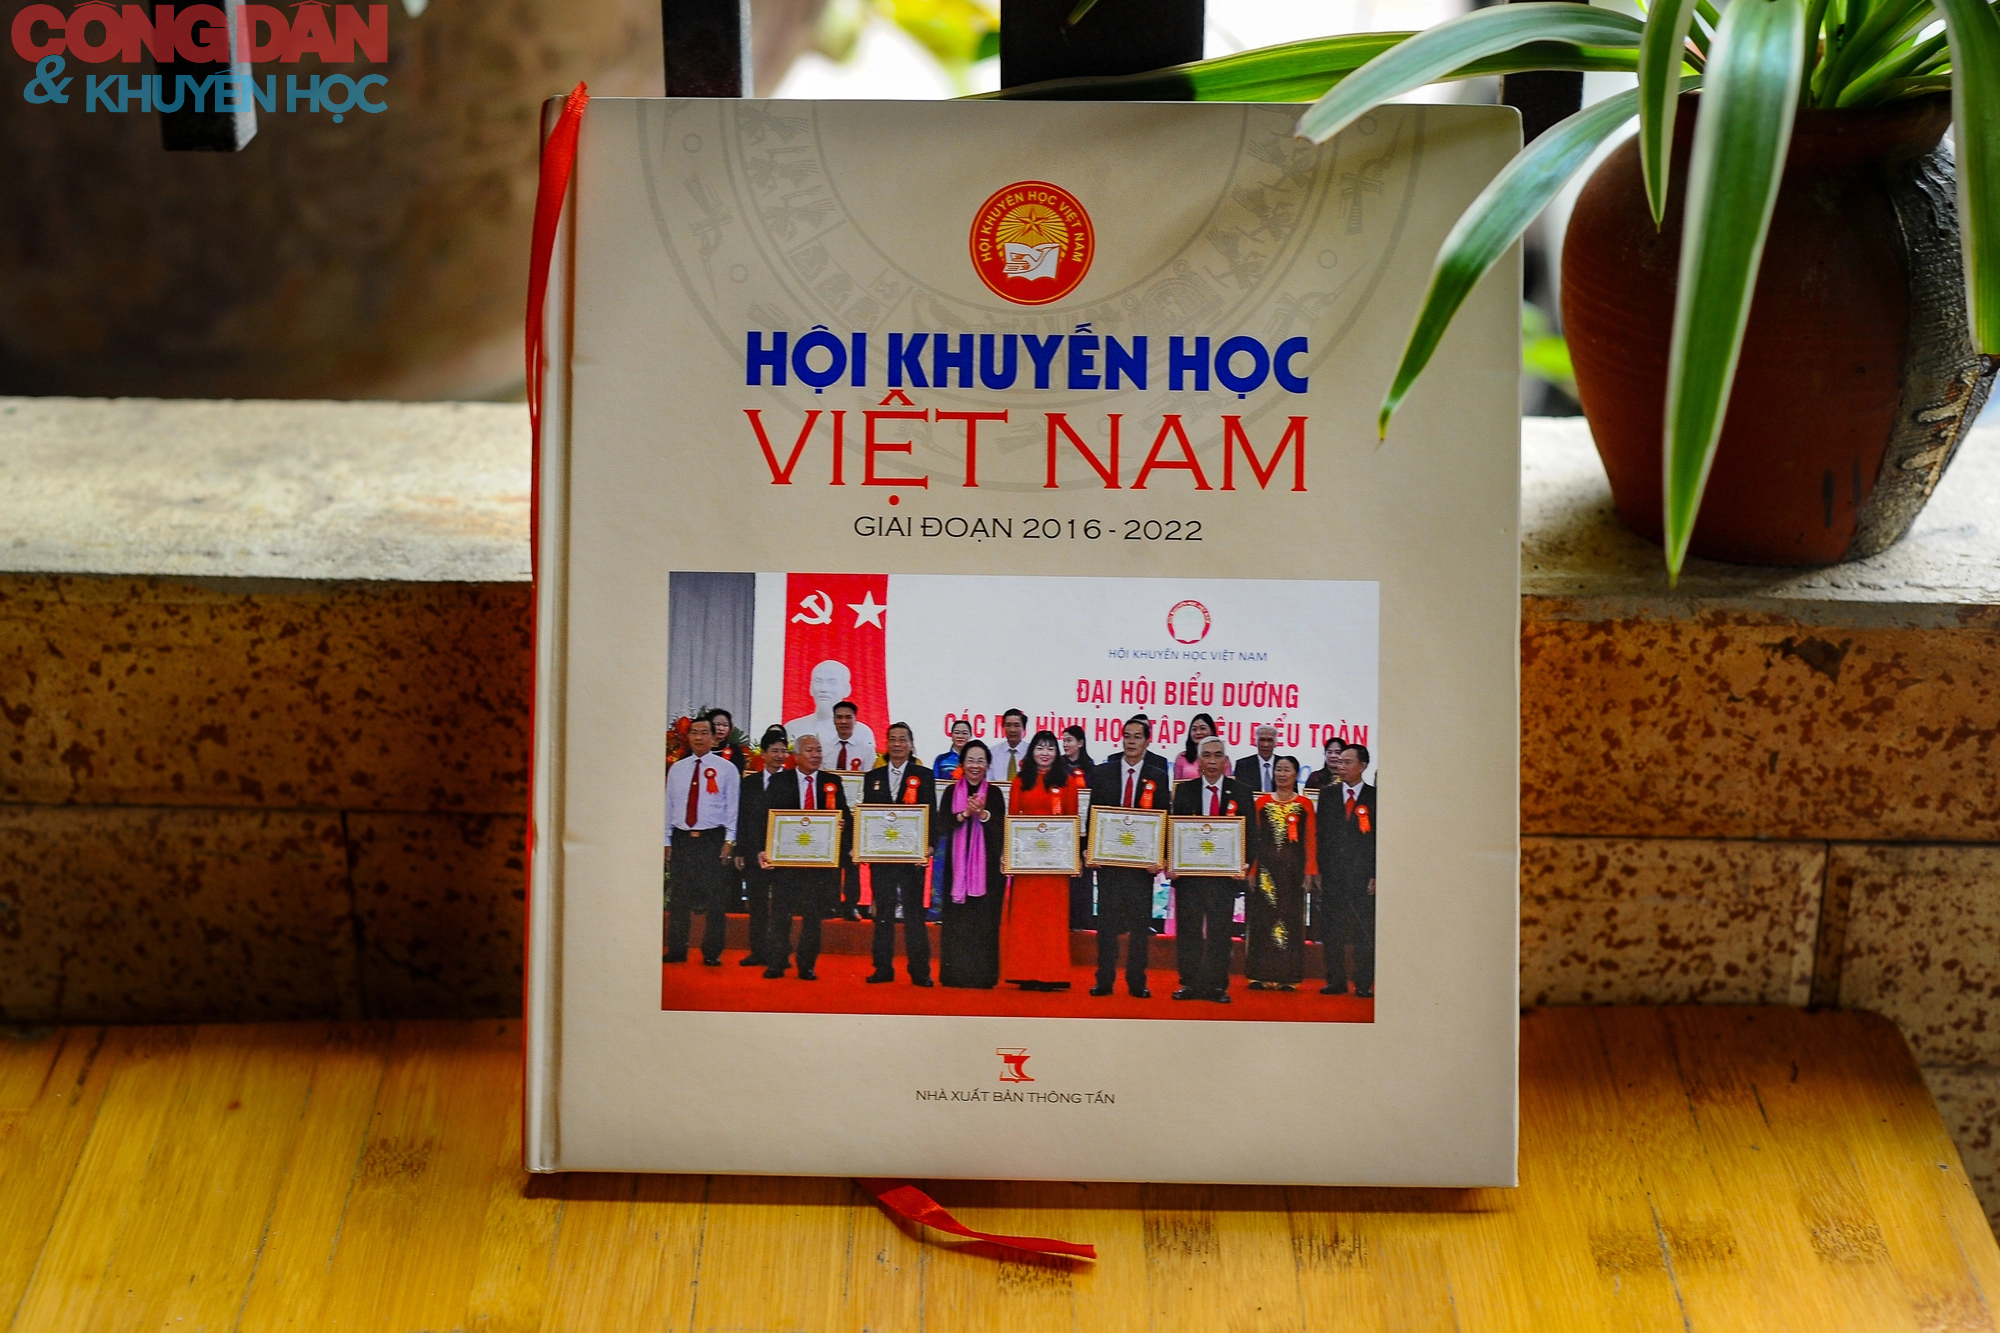 Giới thiệu sách ảnh Hội Khuyến học Việt nam - Ảnh 1.